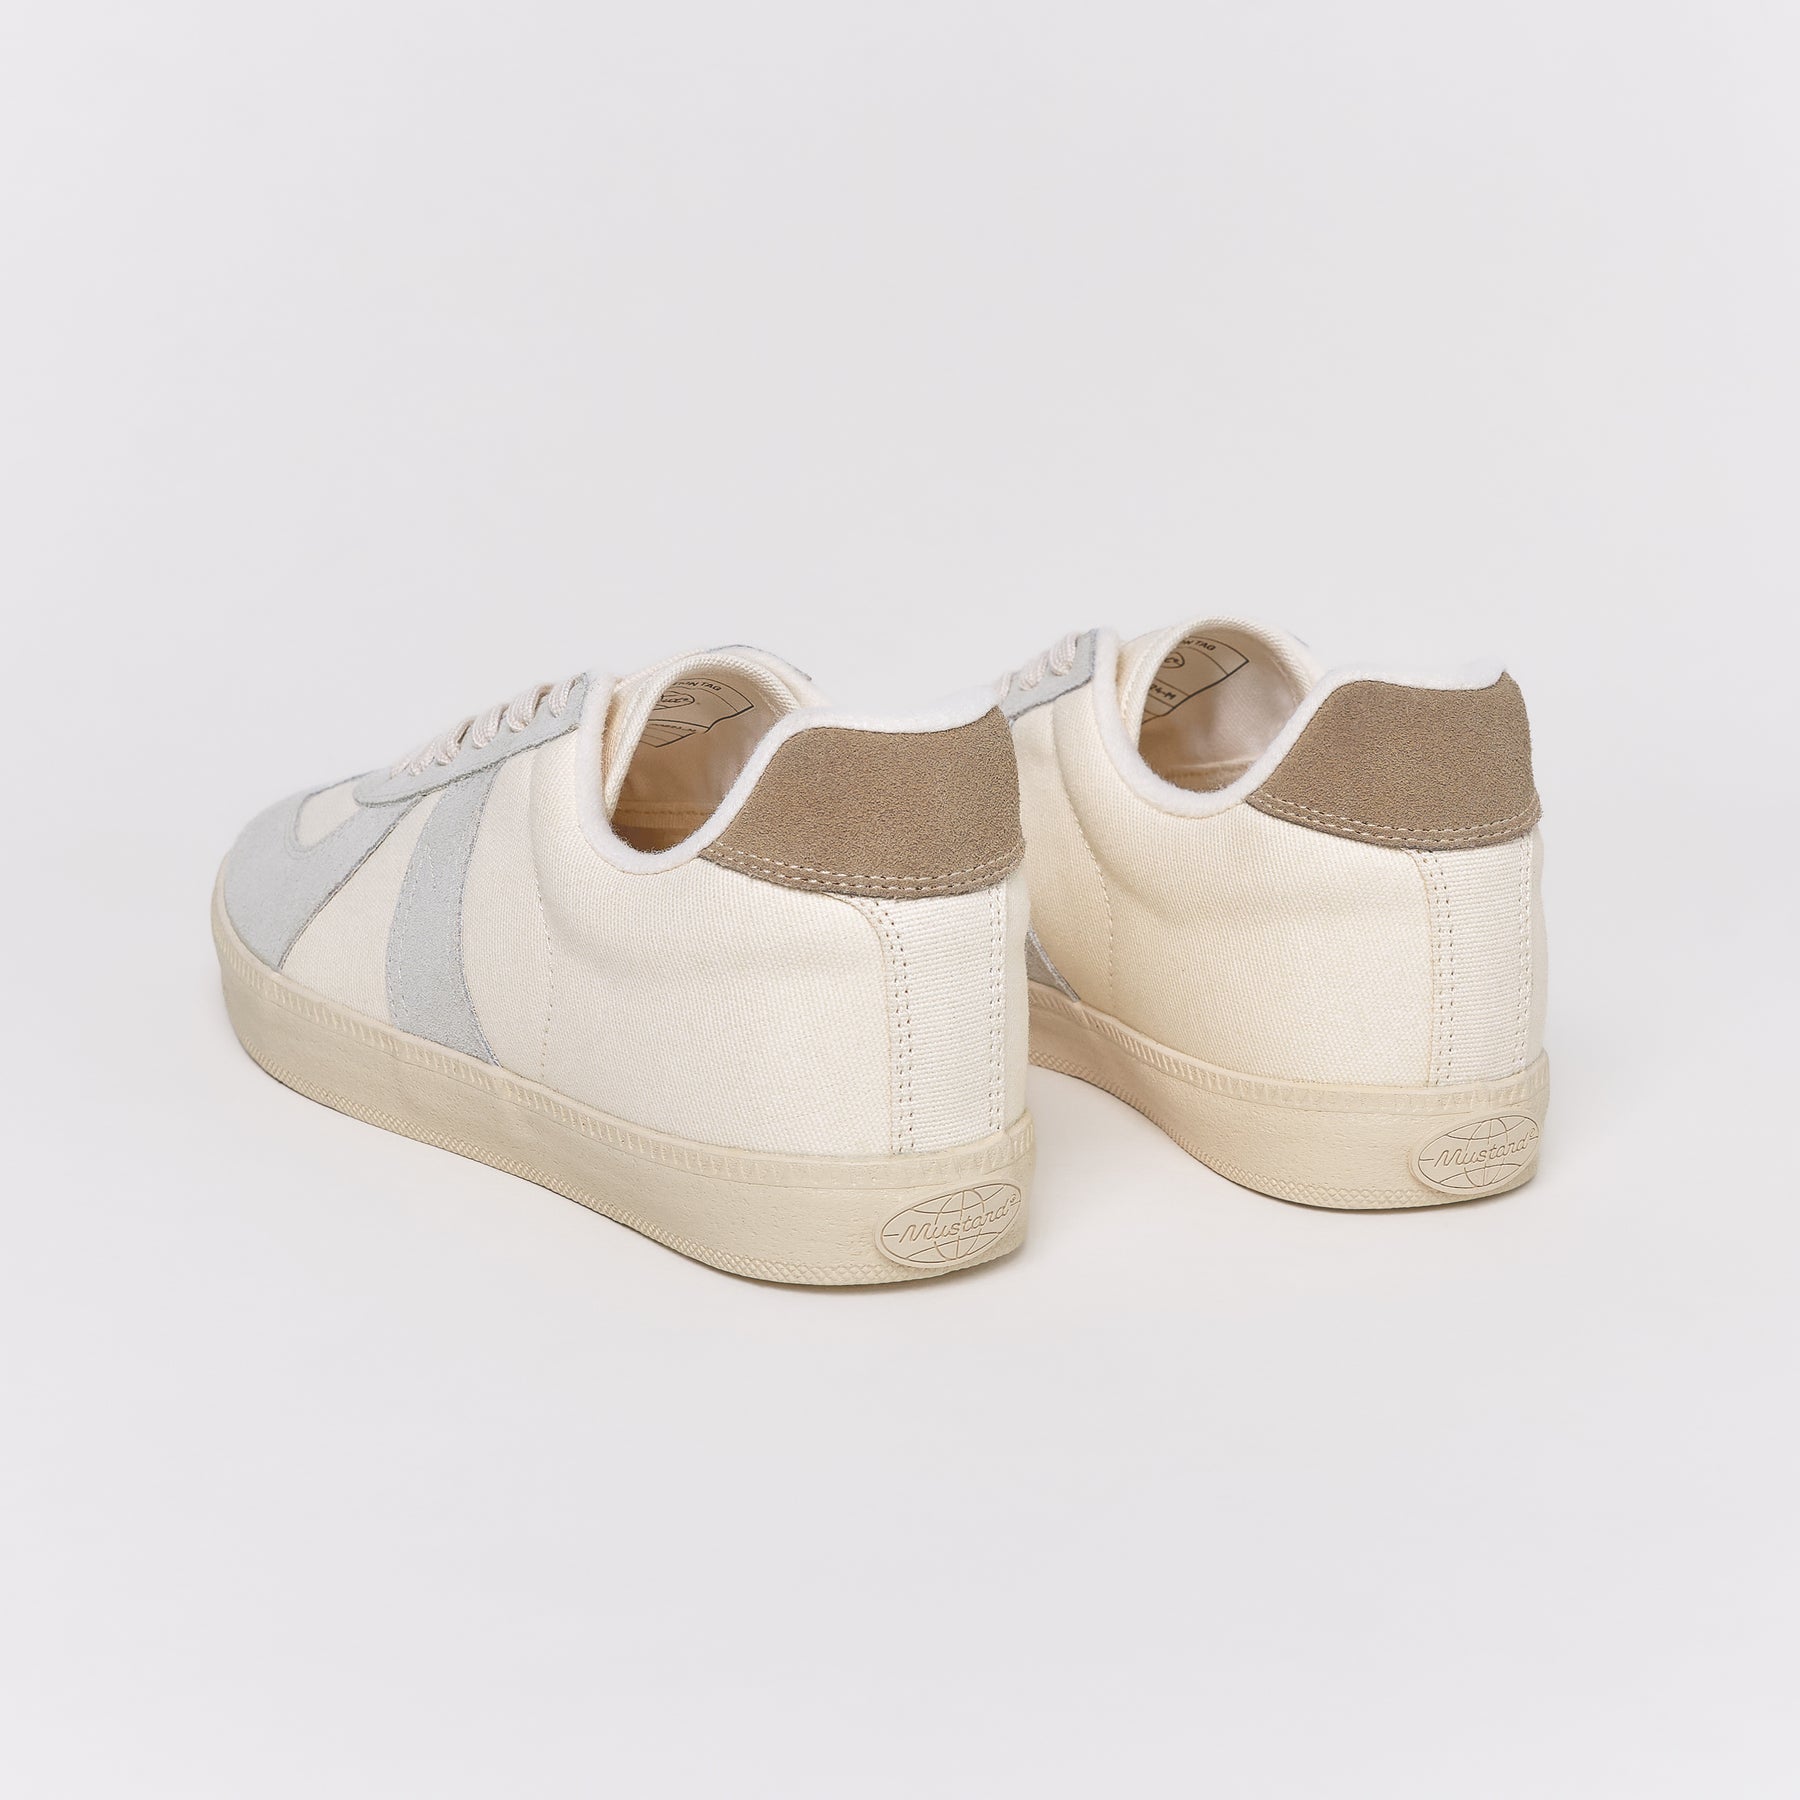 GAT WHITE/BEIGE – Mustard Sneakers